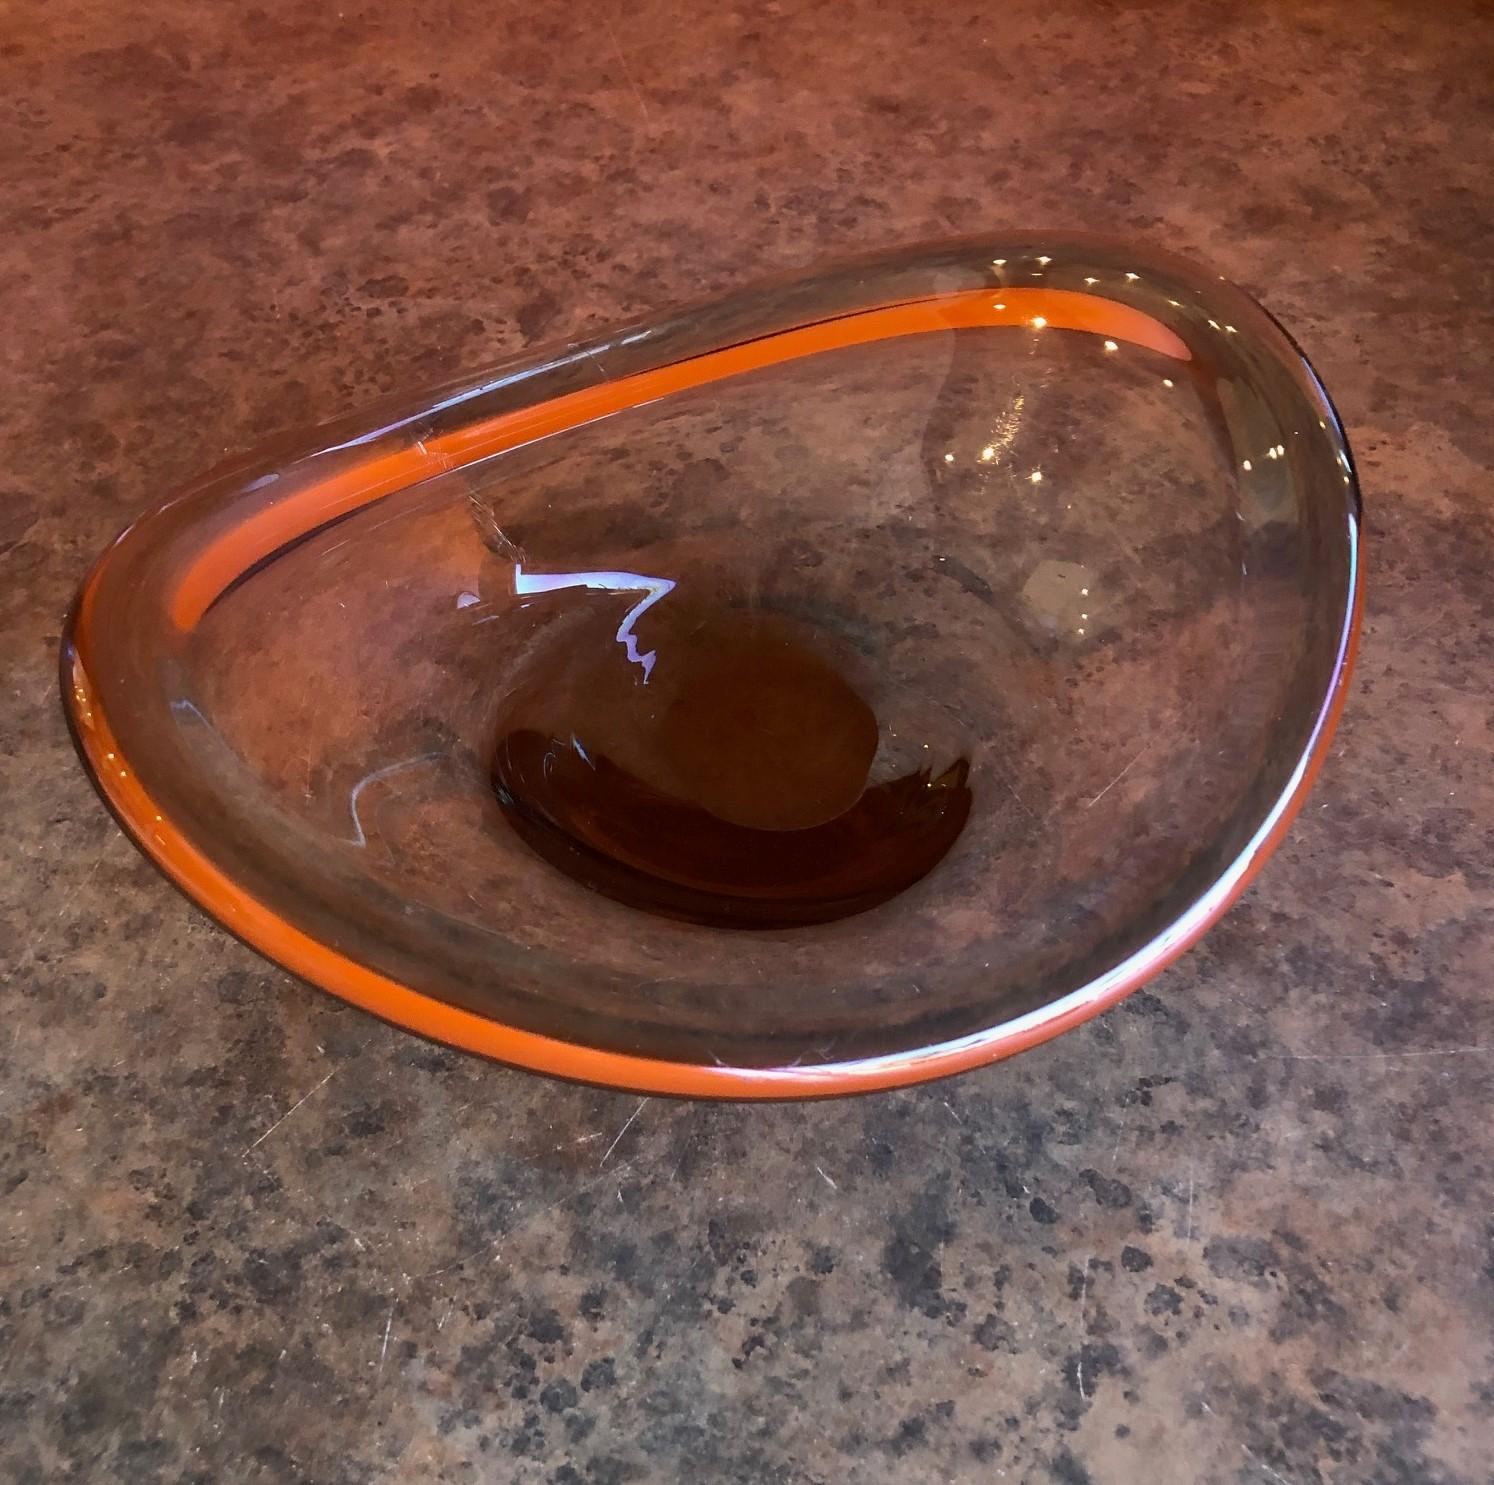 blown glass dish